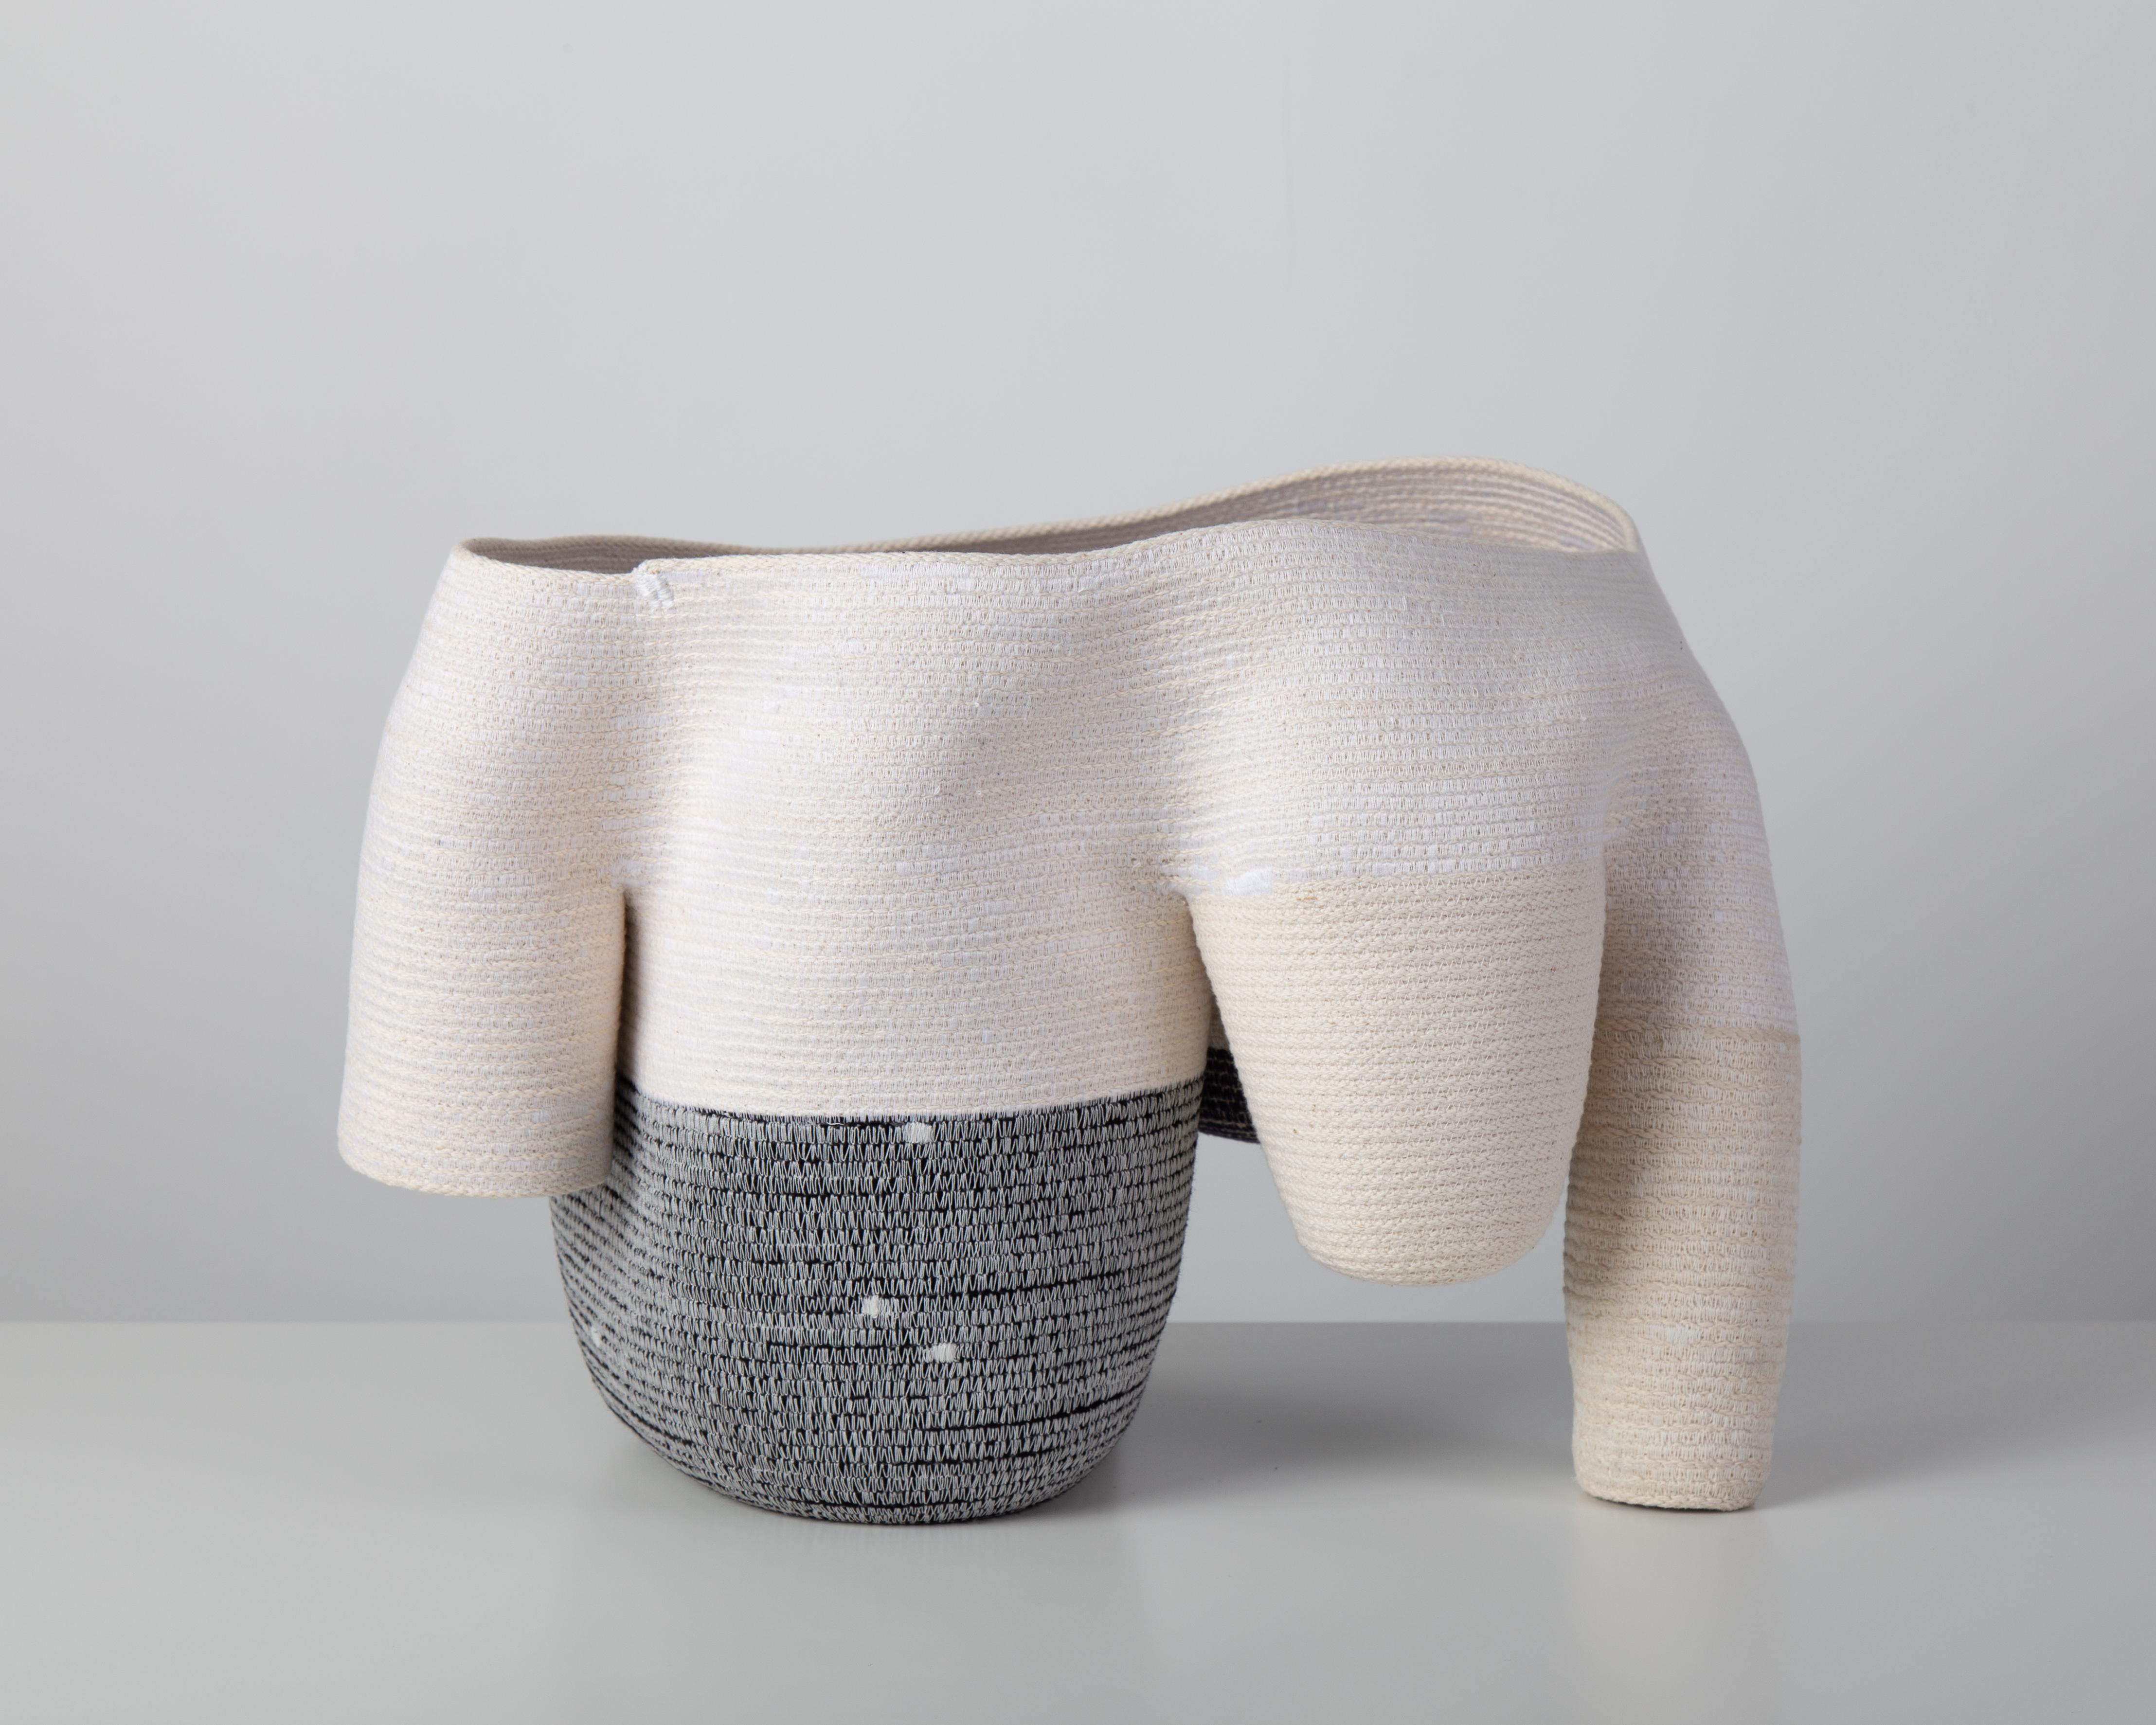 Coton « Vase sans titre de 15 cm » Sculpture en fibre de coton enroulée et cousue de Doug Johnston